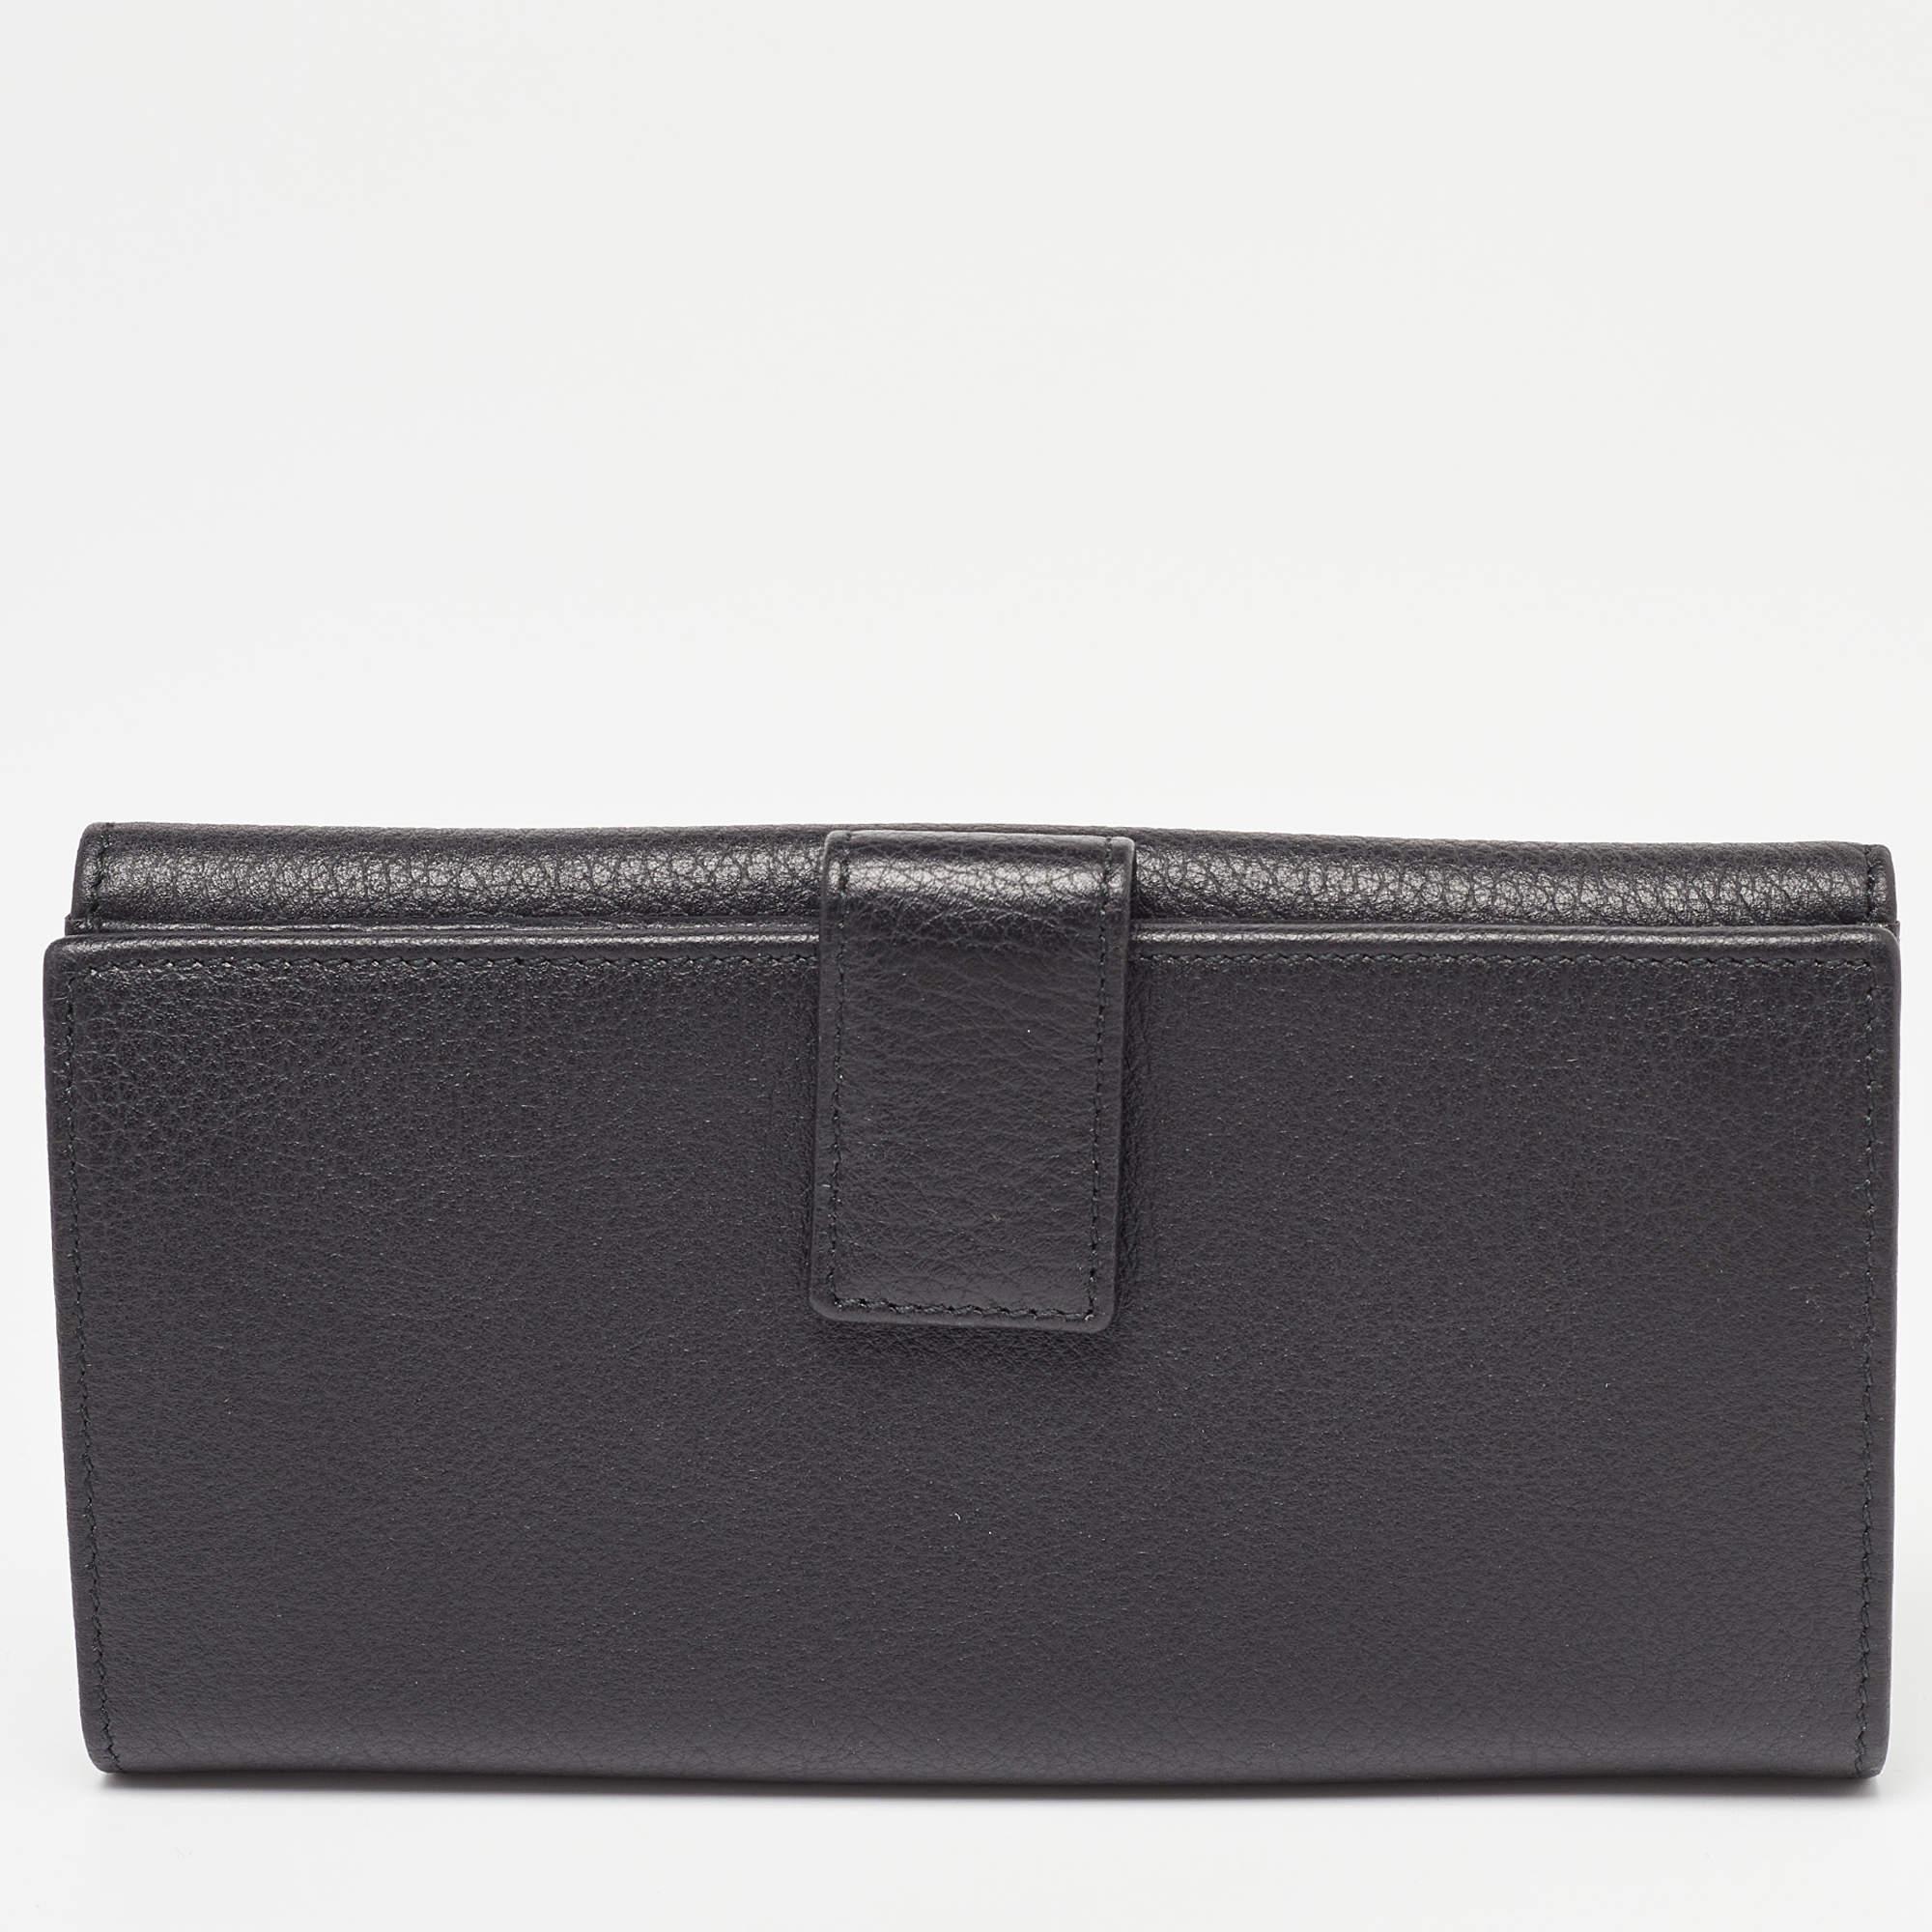 Ce portefeuille Gucci est un accessoire idéal pour tous les jours. Il est fabriqué à partir de matériaux de qualité à l'extérieur et comporte un intérieur compartimenté.

Comprend : Boîte d'origine, livret d'information